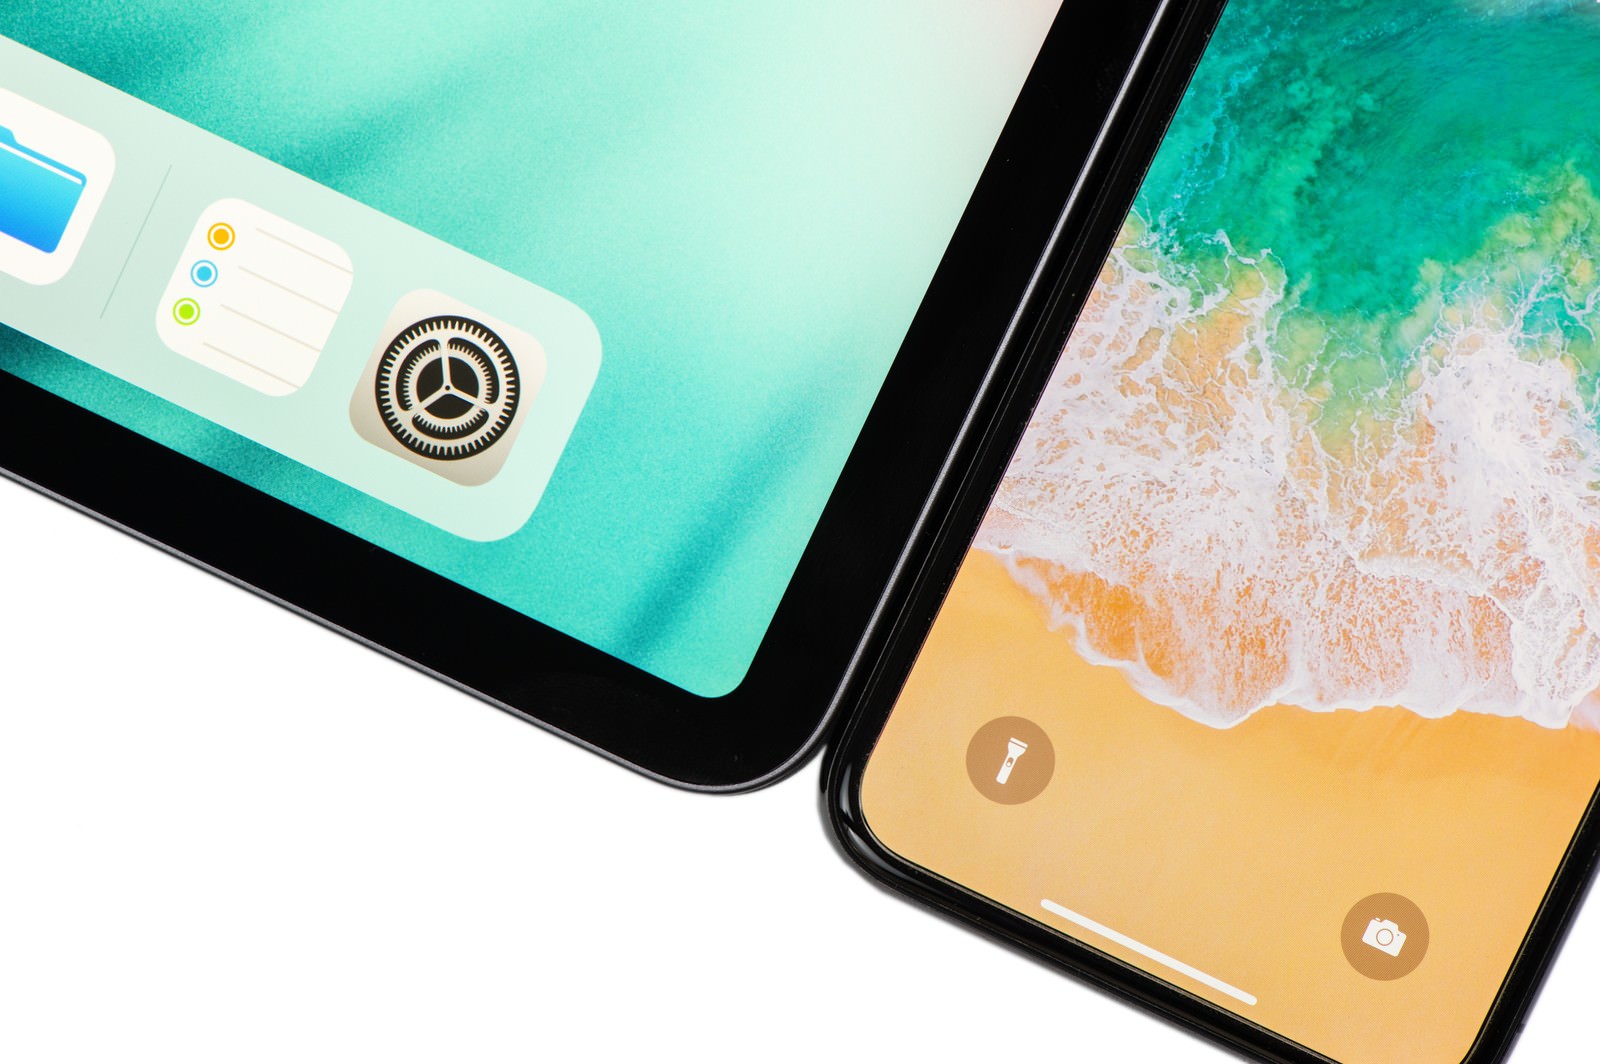 ã12.9ã¤ã³ã iPad Pro 2018ã¨iPhone Xã®ãã¼ã«æ¯è¼ã